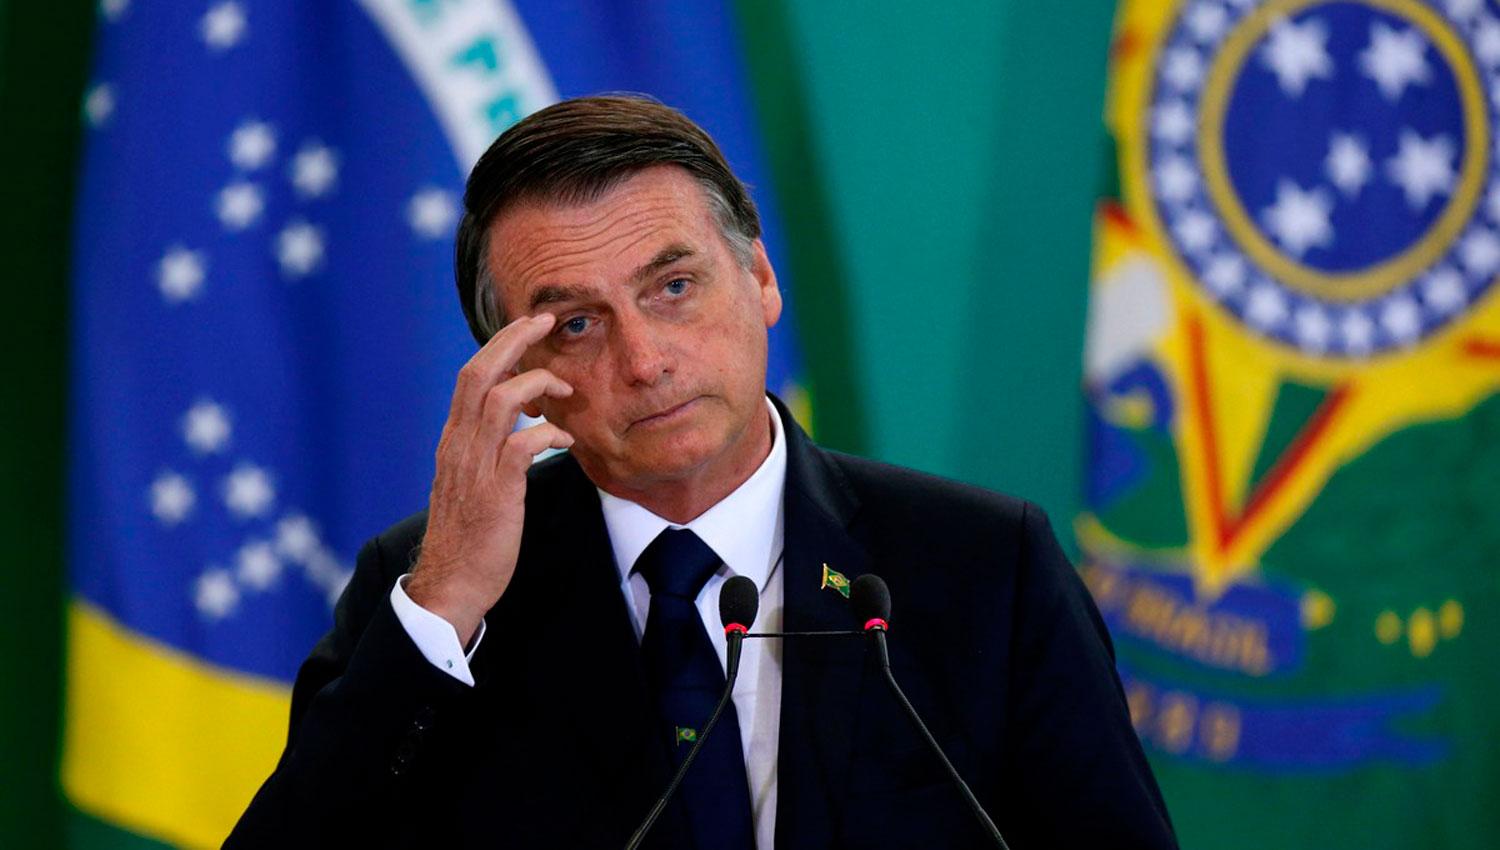 DUDAS ACLARADAS. La reacción positiva de los mercados tras la asunción de Bolsonaro despejaron cualquier duda que estaba teniendo el Ejecutivo.